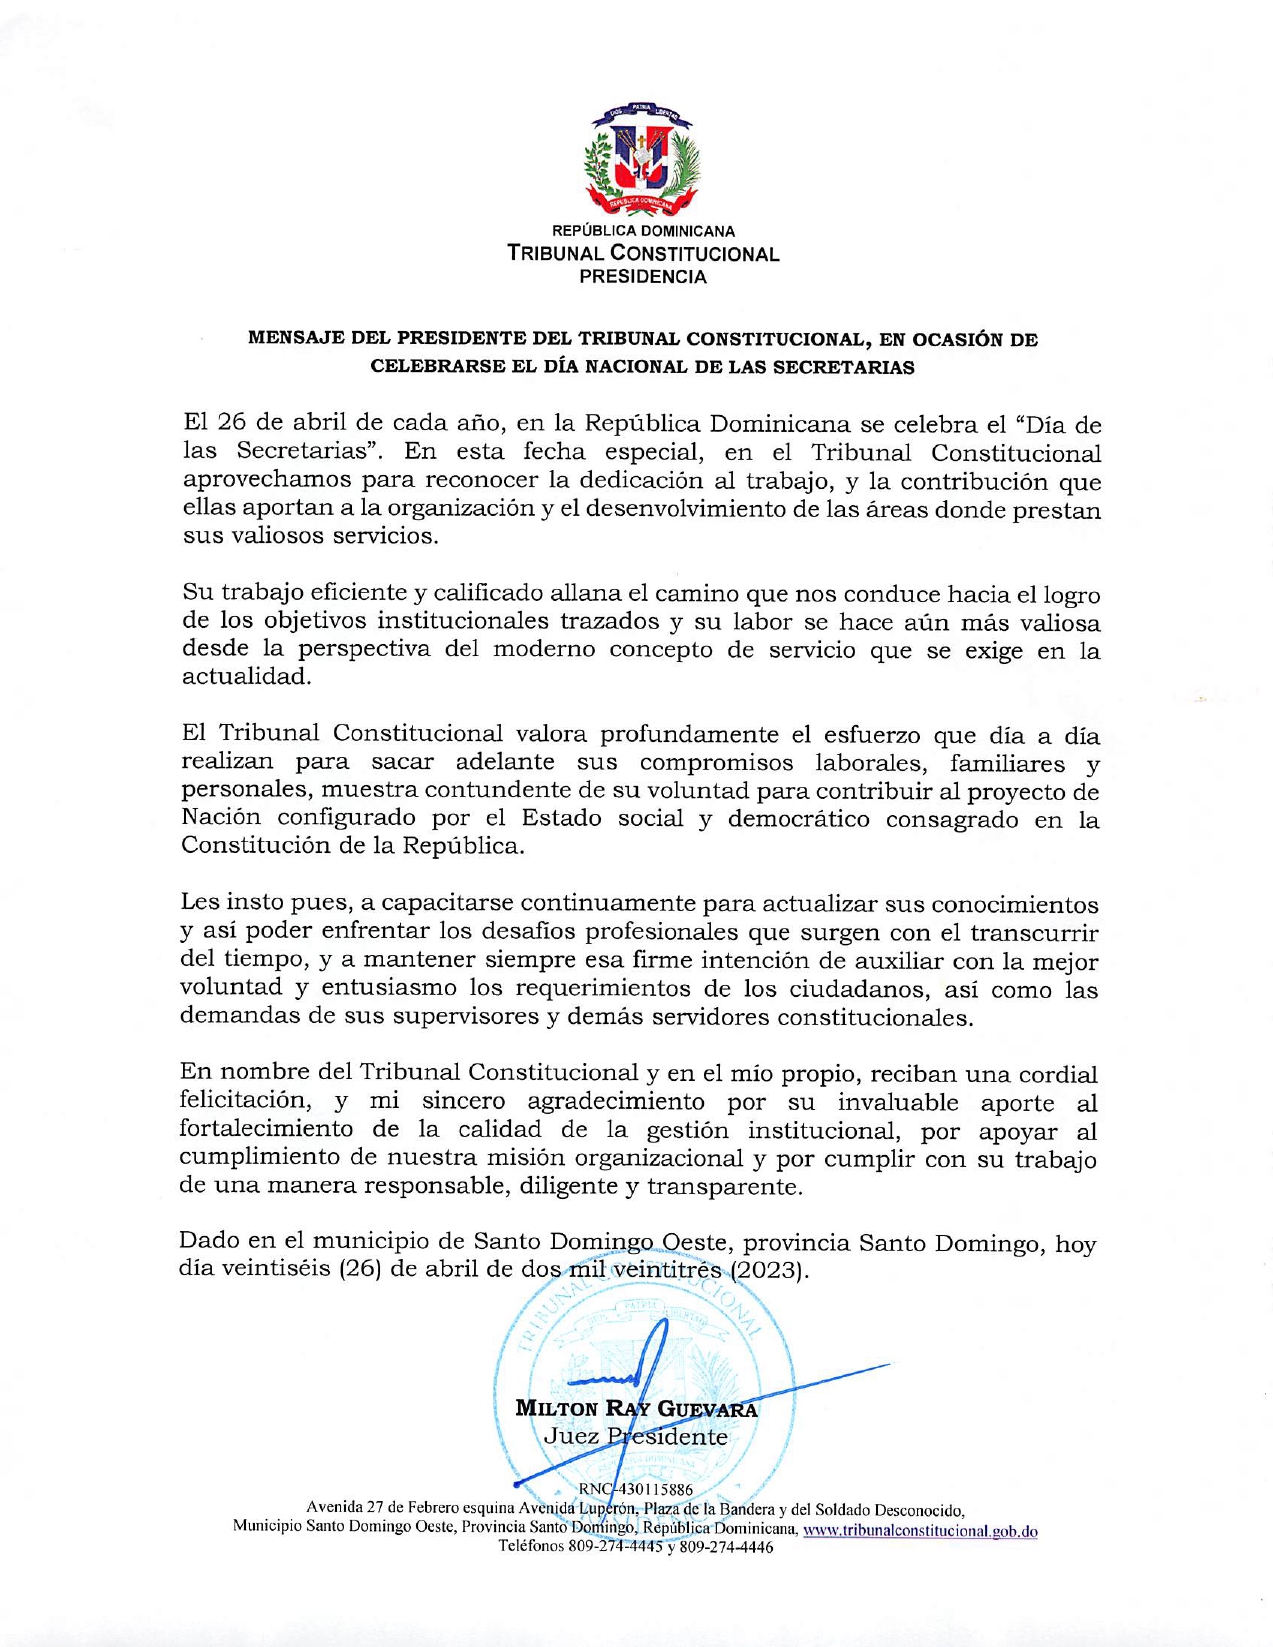 Mensaje del presidente del Tribunal Constitucional, en ocasión de celebrarse el Día Nacional de las Secretarias 2023